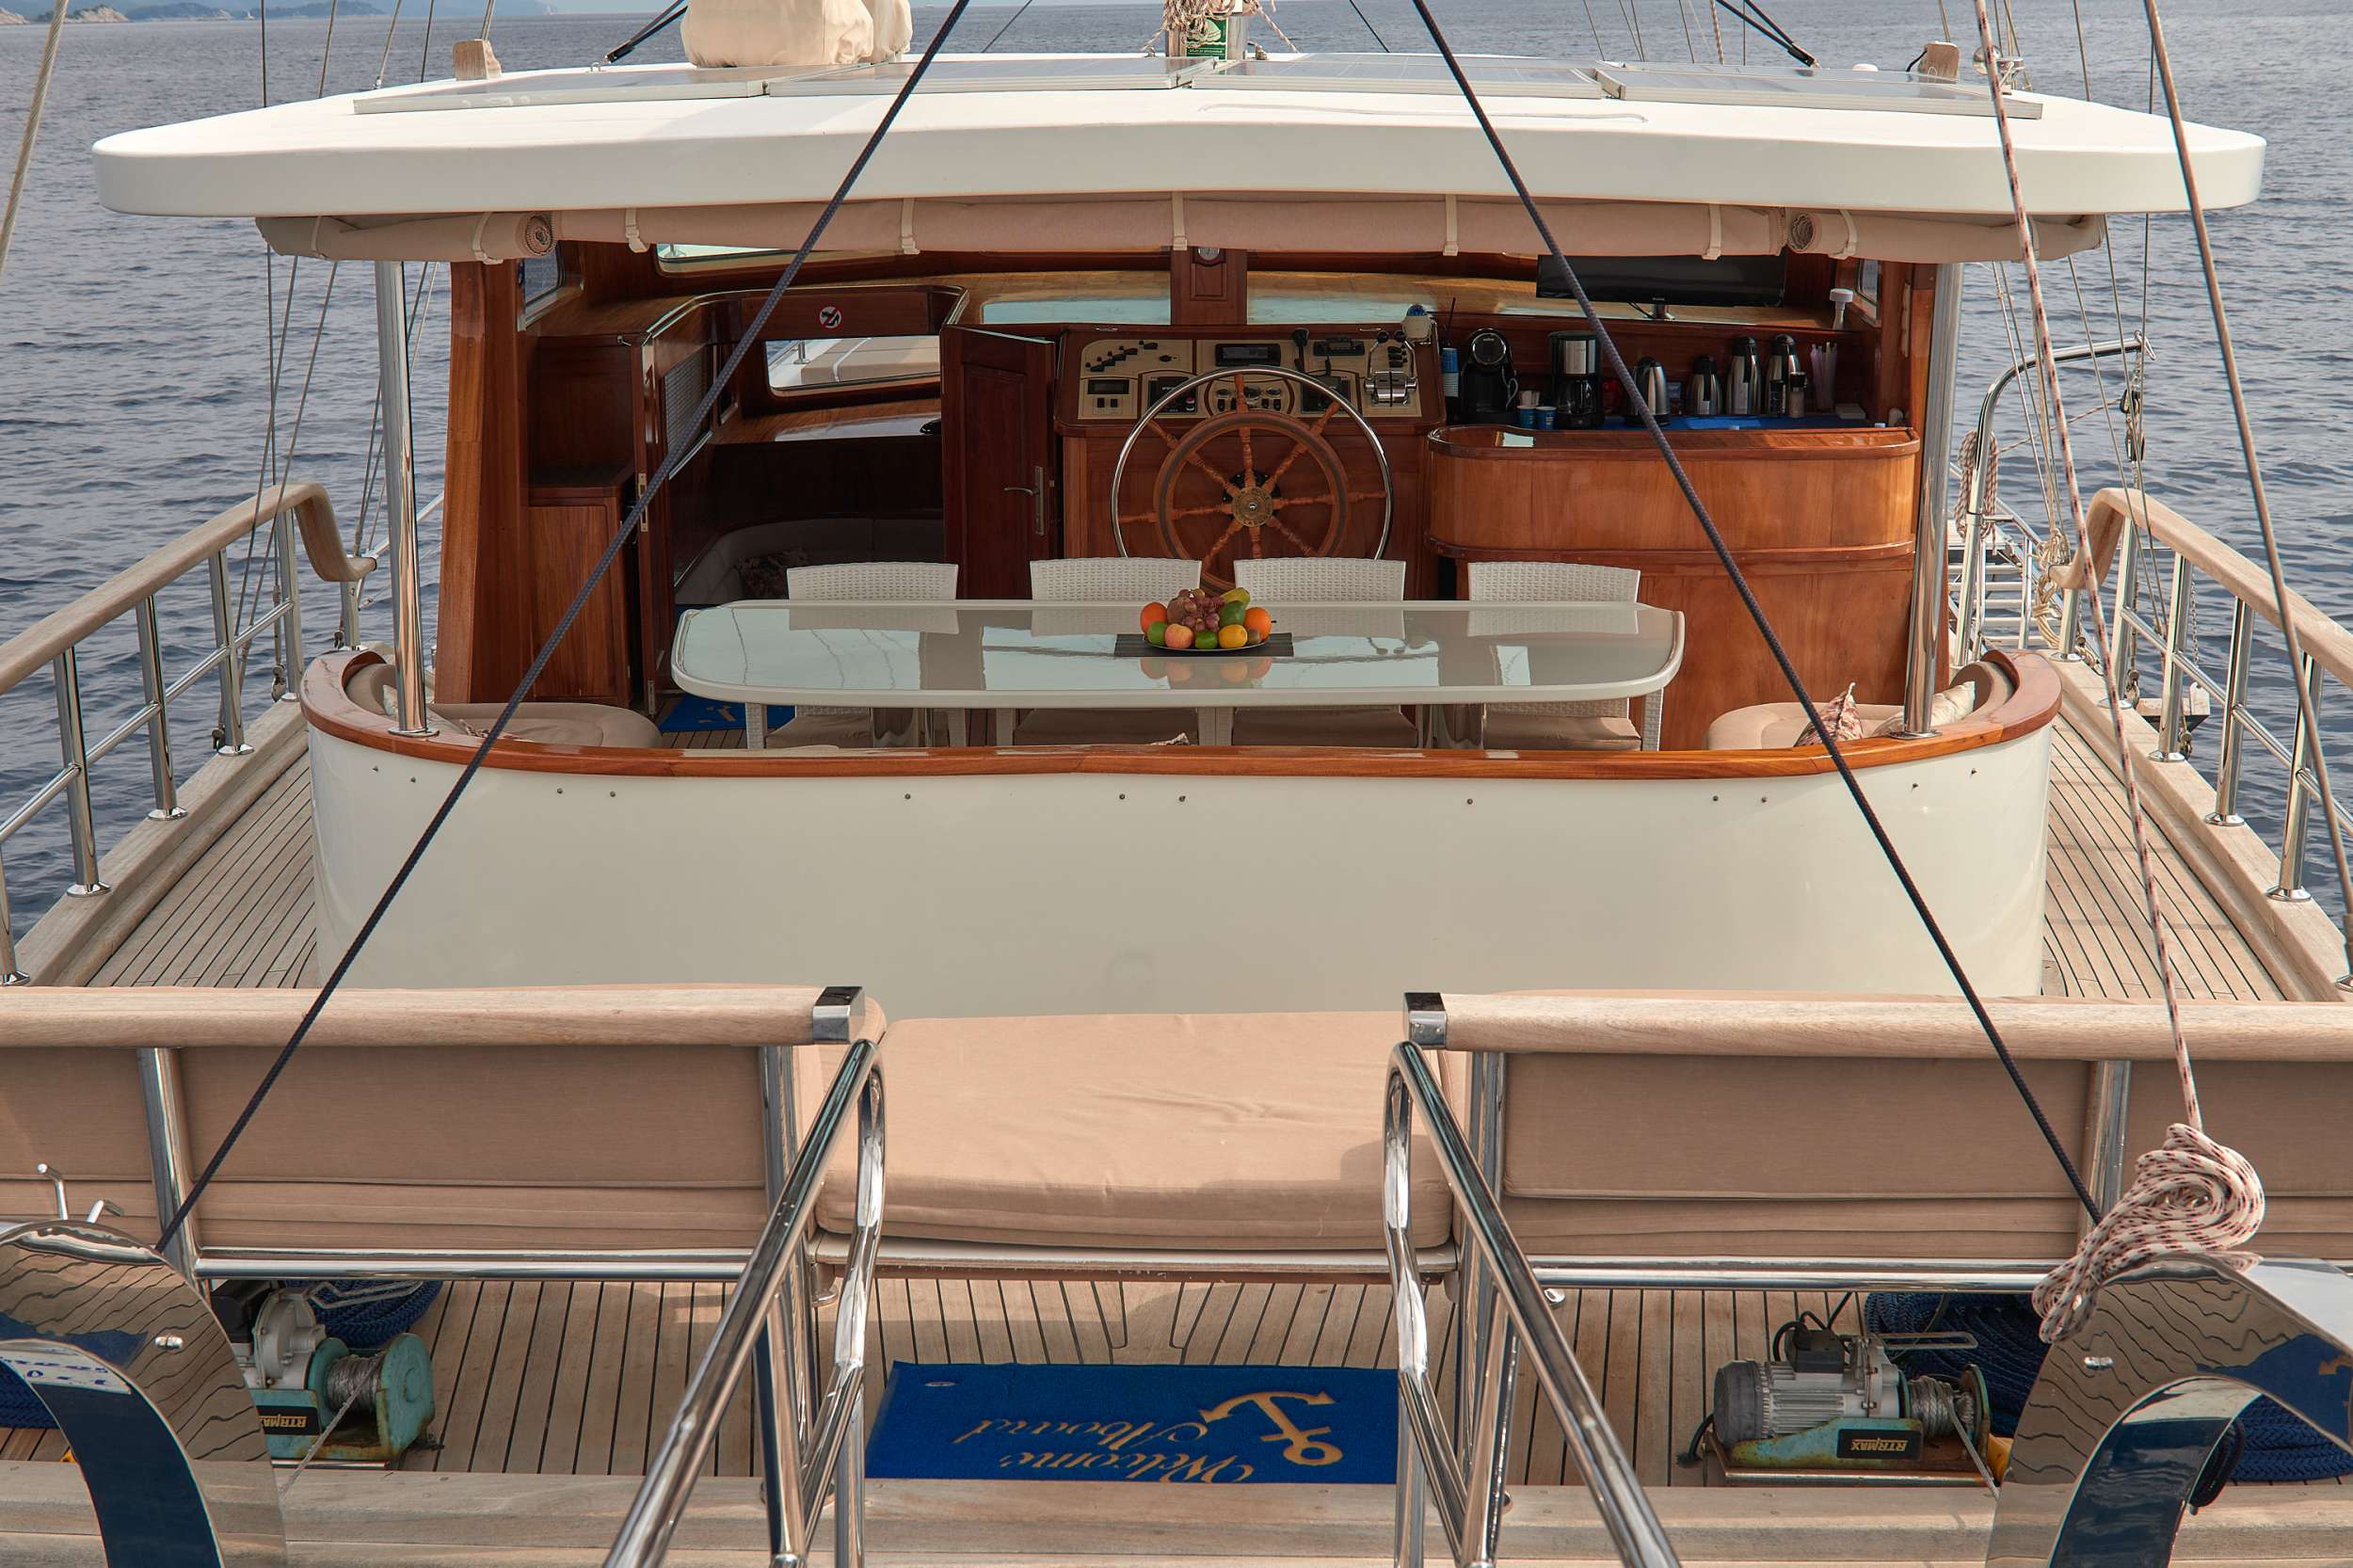 SEA BREEZE - Yacht Charter Brbinj & Boat hire in Croatia 4